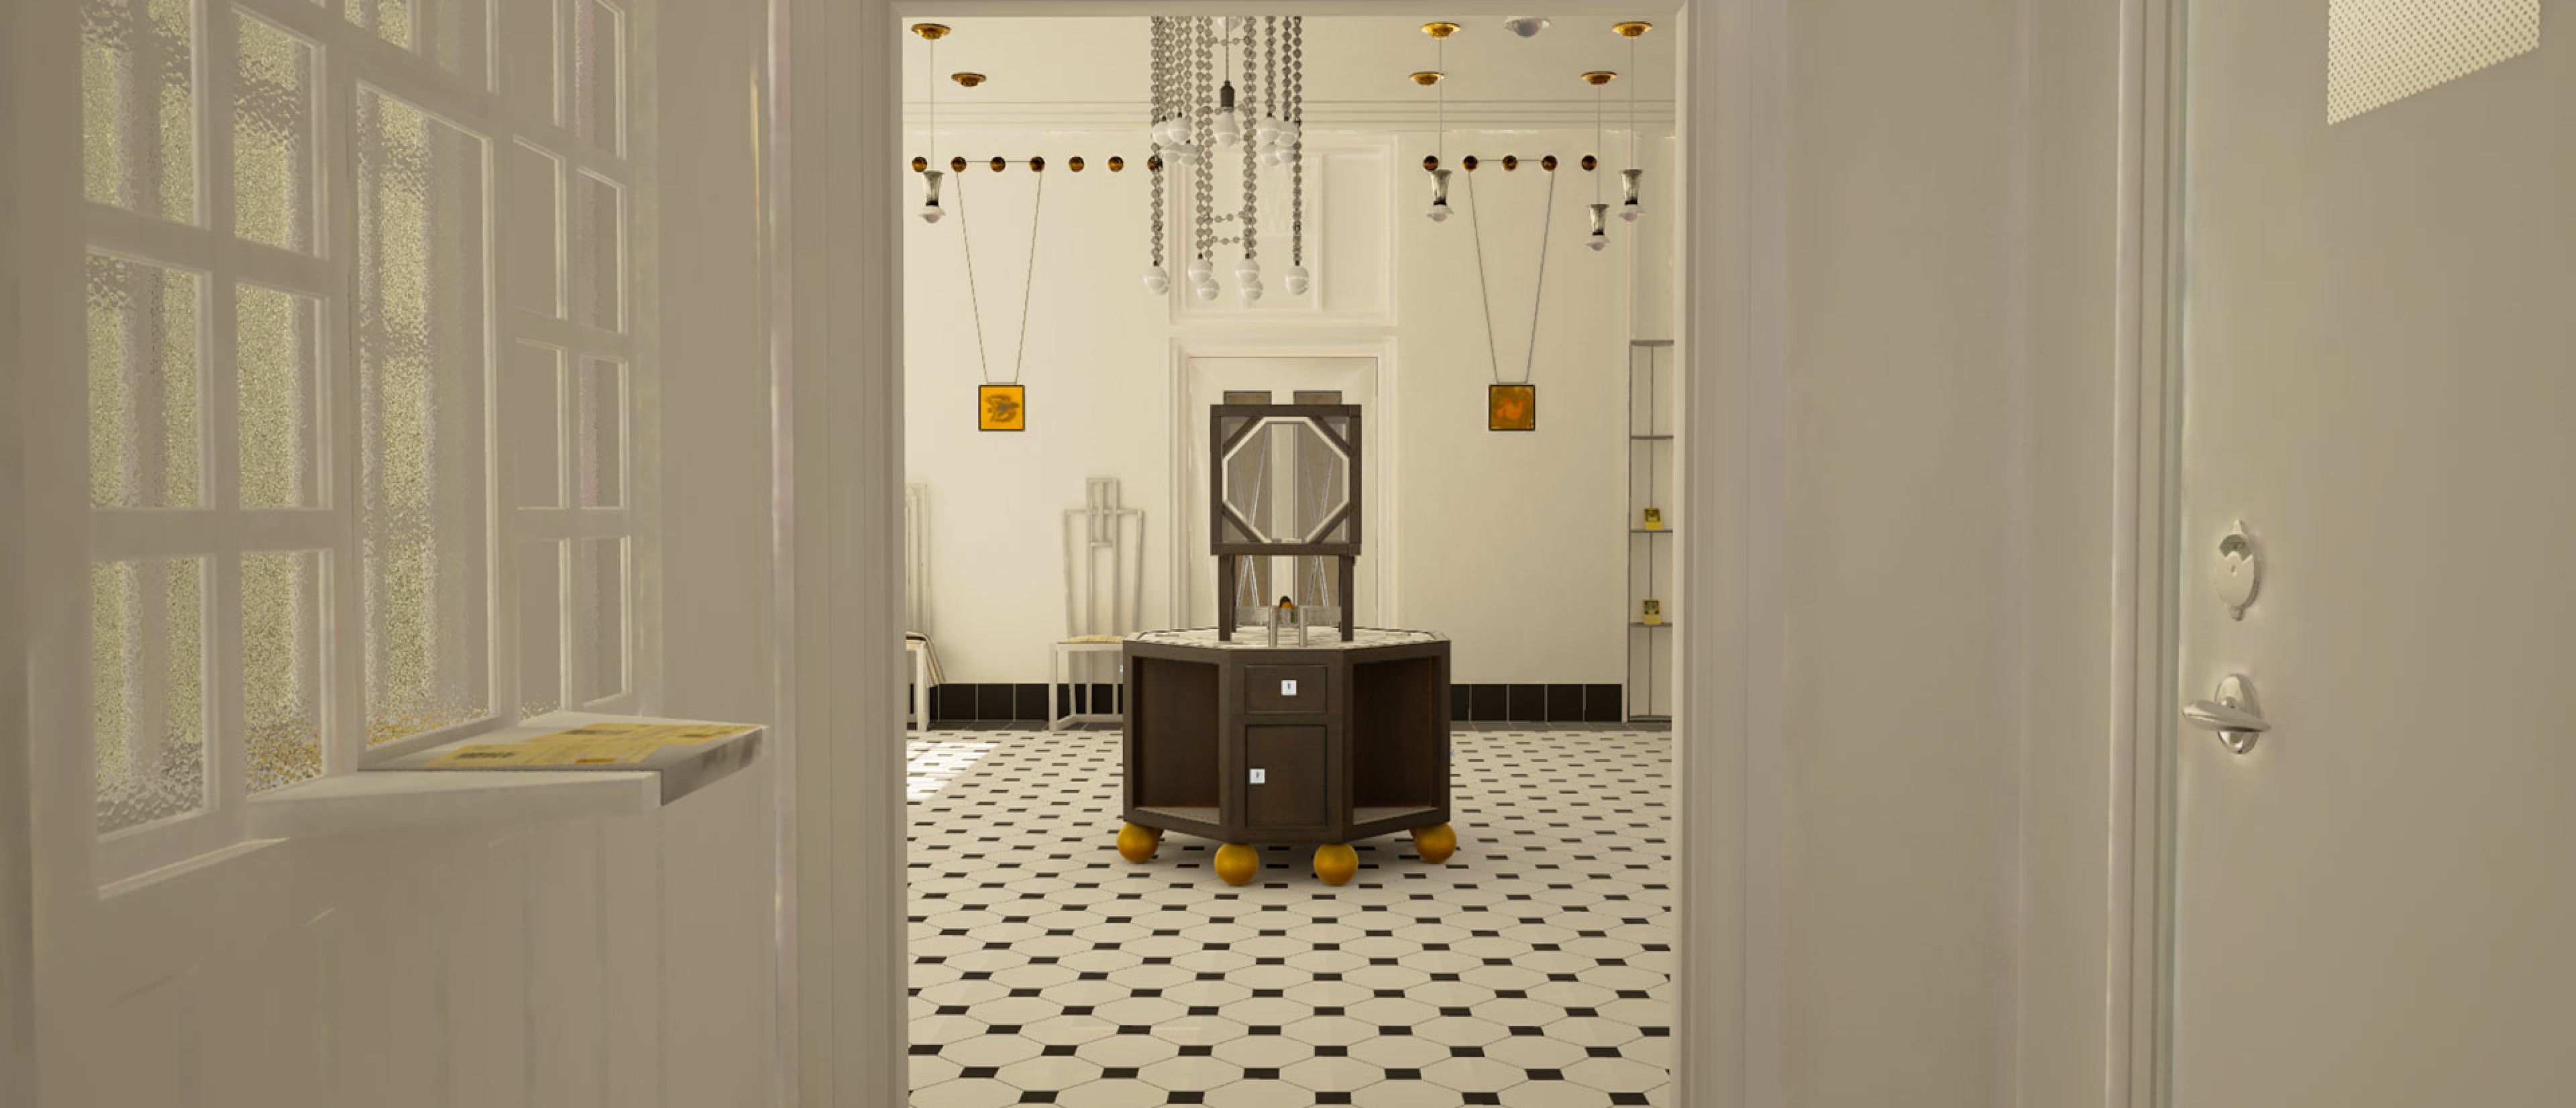 Virtual Reality Visualisierung des Verkaufsraumes der Wiener Werkstätte, weiße Flügeltüren, schwarz-weißer gefliester Boden. 